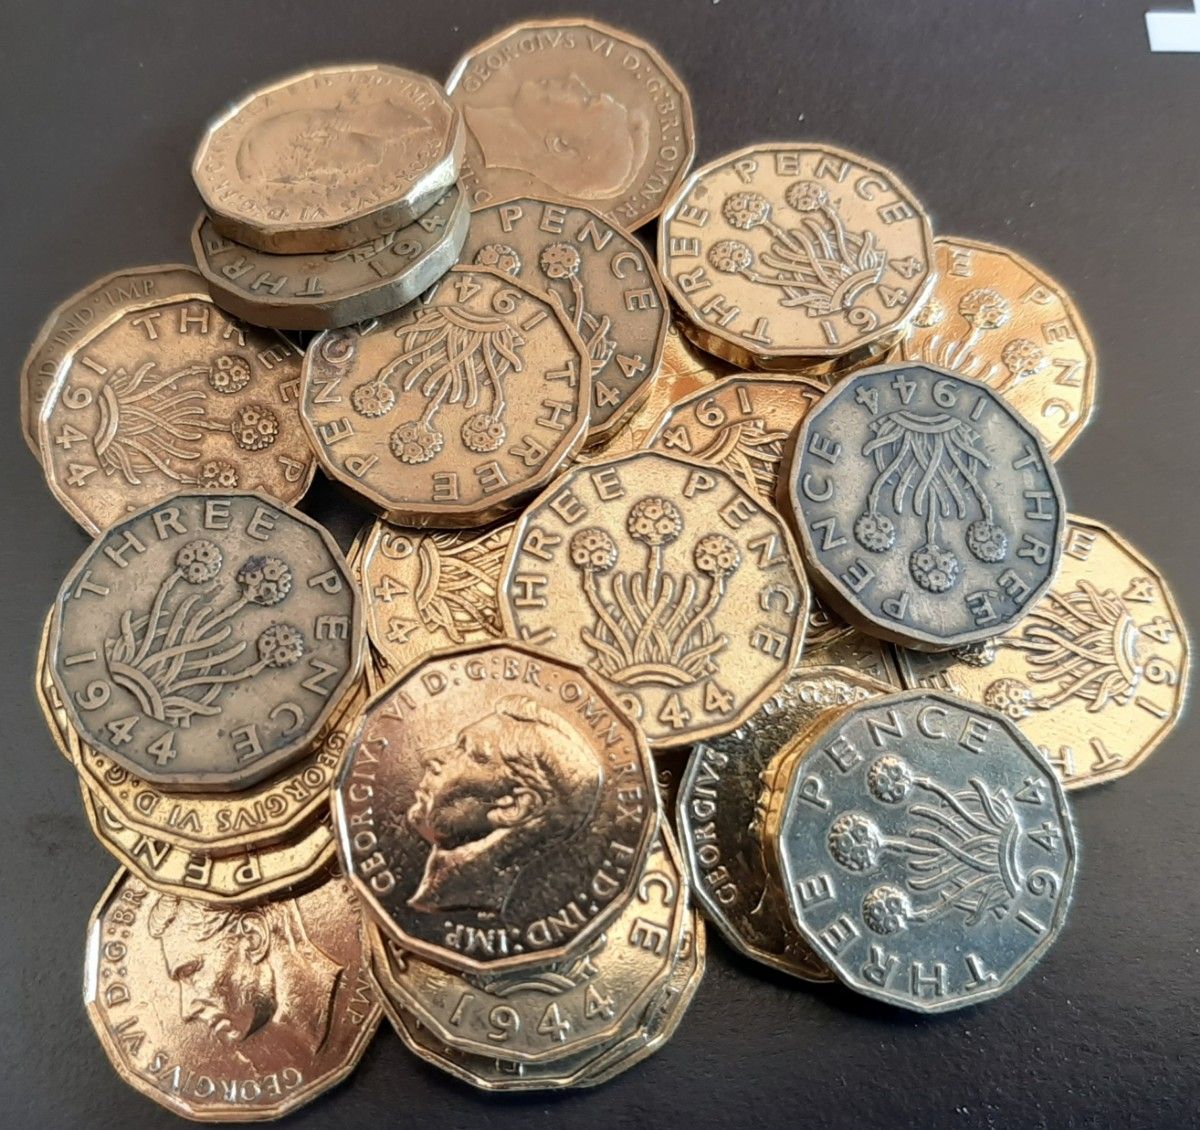 1937年~1952年 英国 3ペニーコイン 100個セットイギリス 3ペンスブラス美物ジョージ王21mm x 2.5mm6.8g